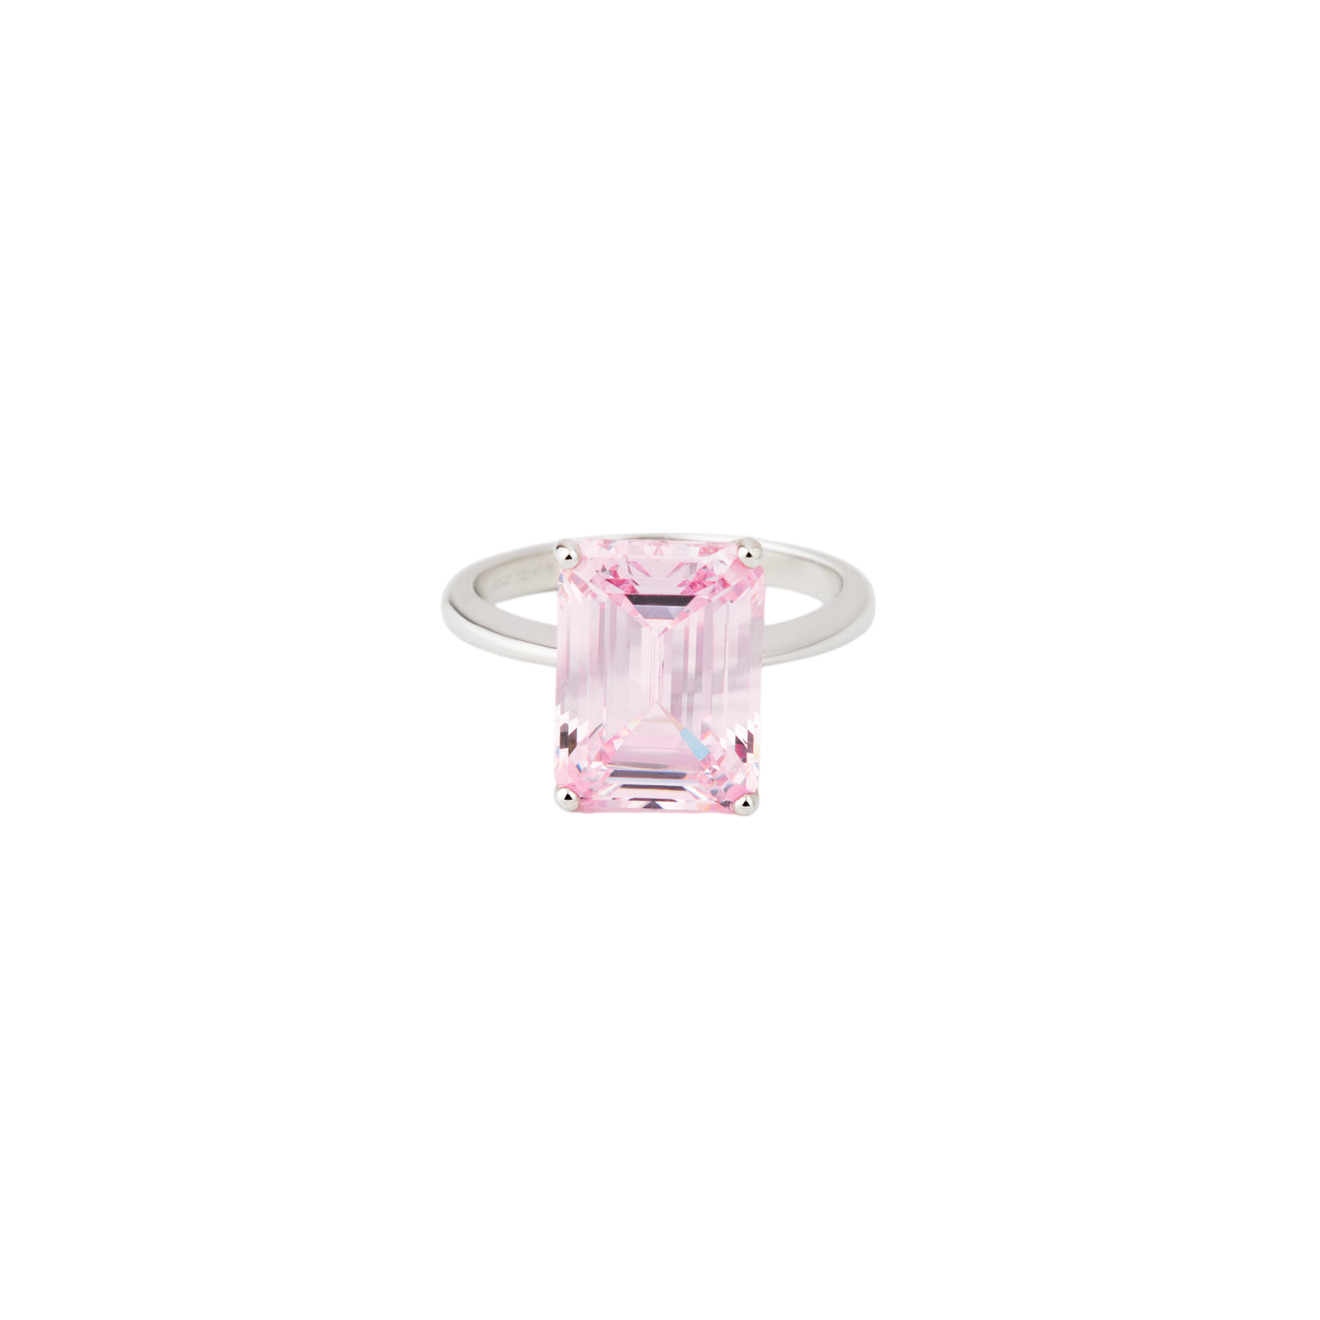 Holy Silver Кольцо из серебра с розовым прямоугольным камнем lisa smith золотистое кольцо с молочным прямоугольным камнем